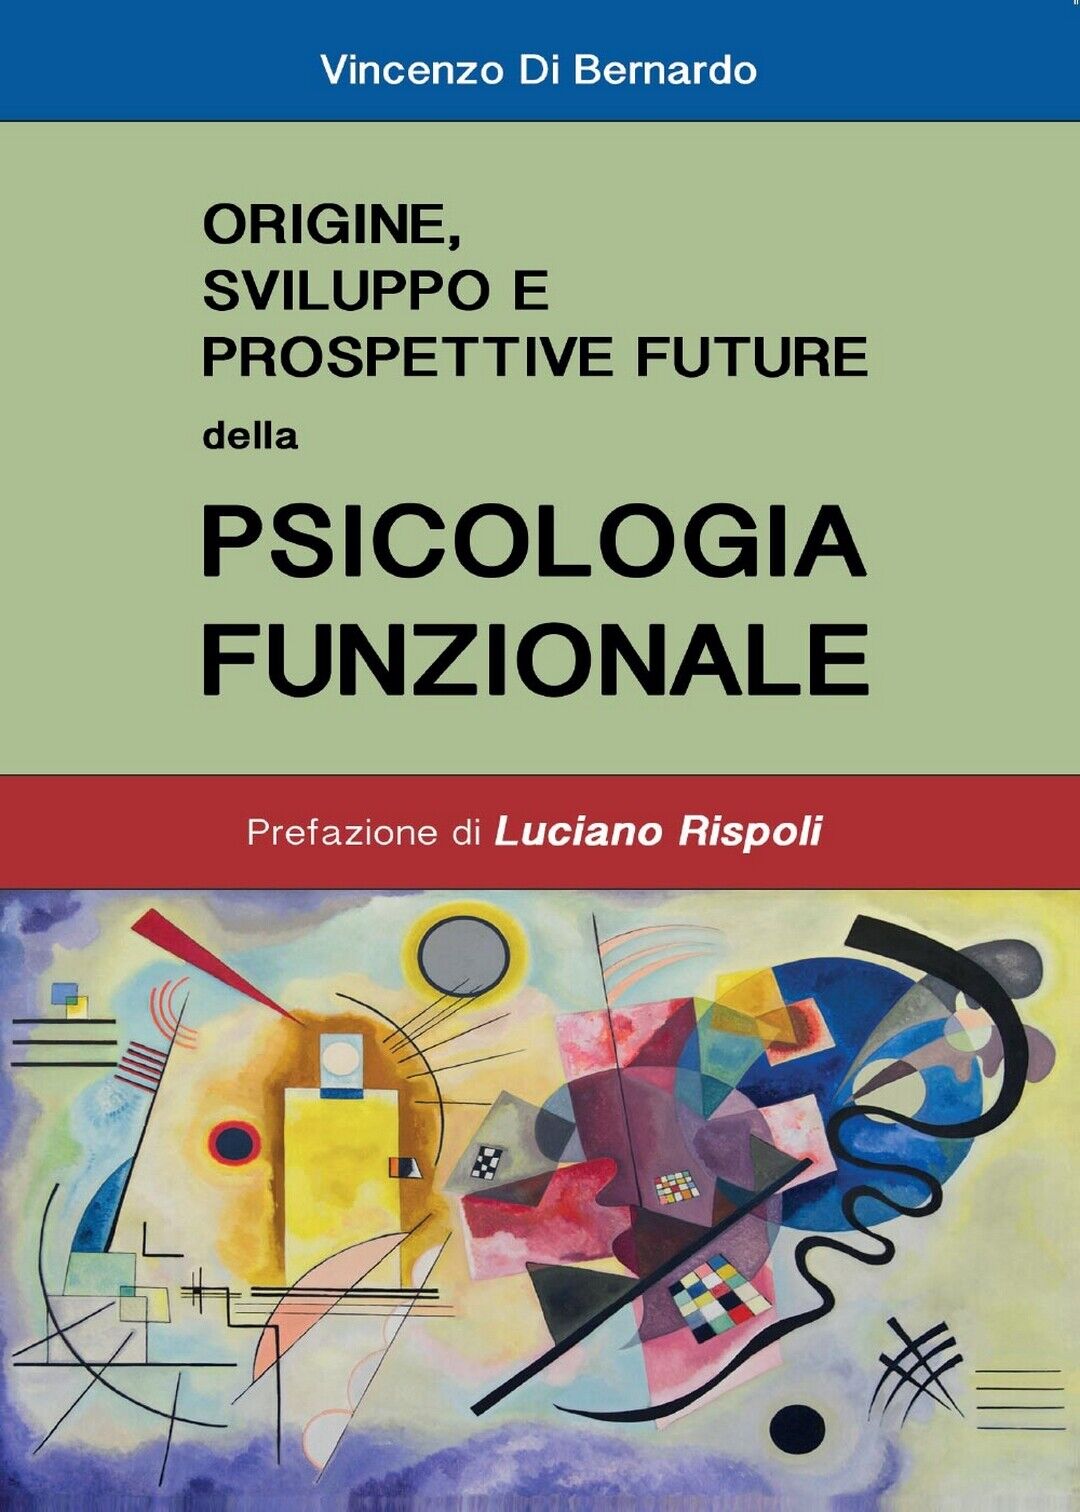 Origine, sviluppo e prospettive future della Psicologia Funzionale (di Bernardo)